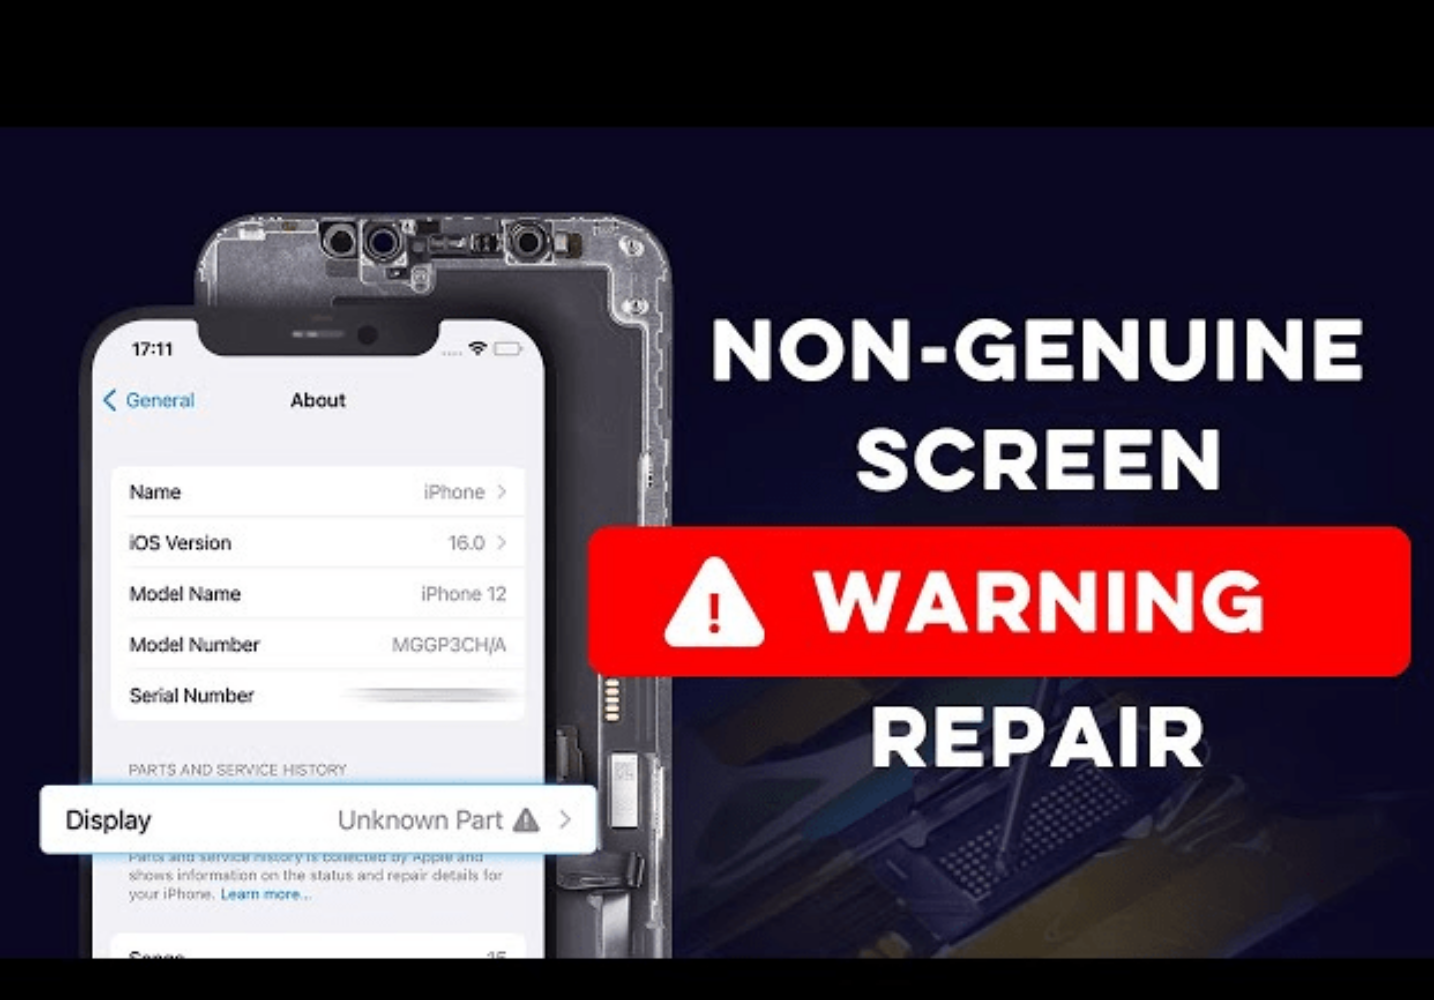 non-genuice screen warning repair